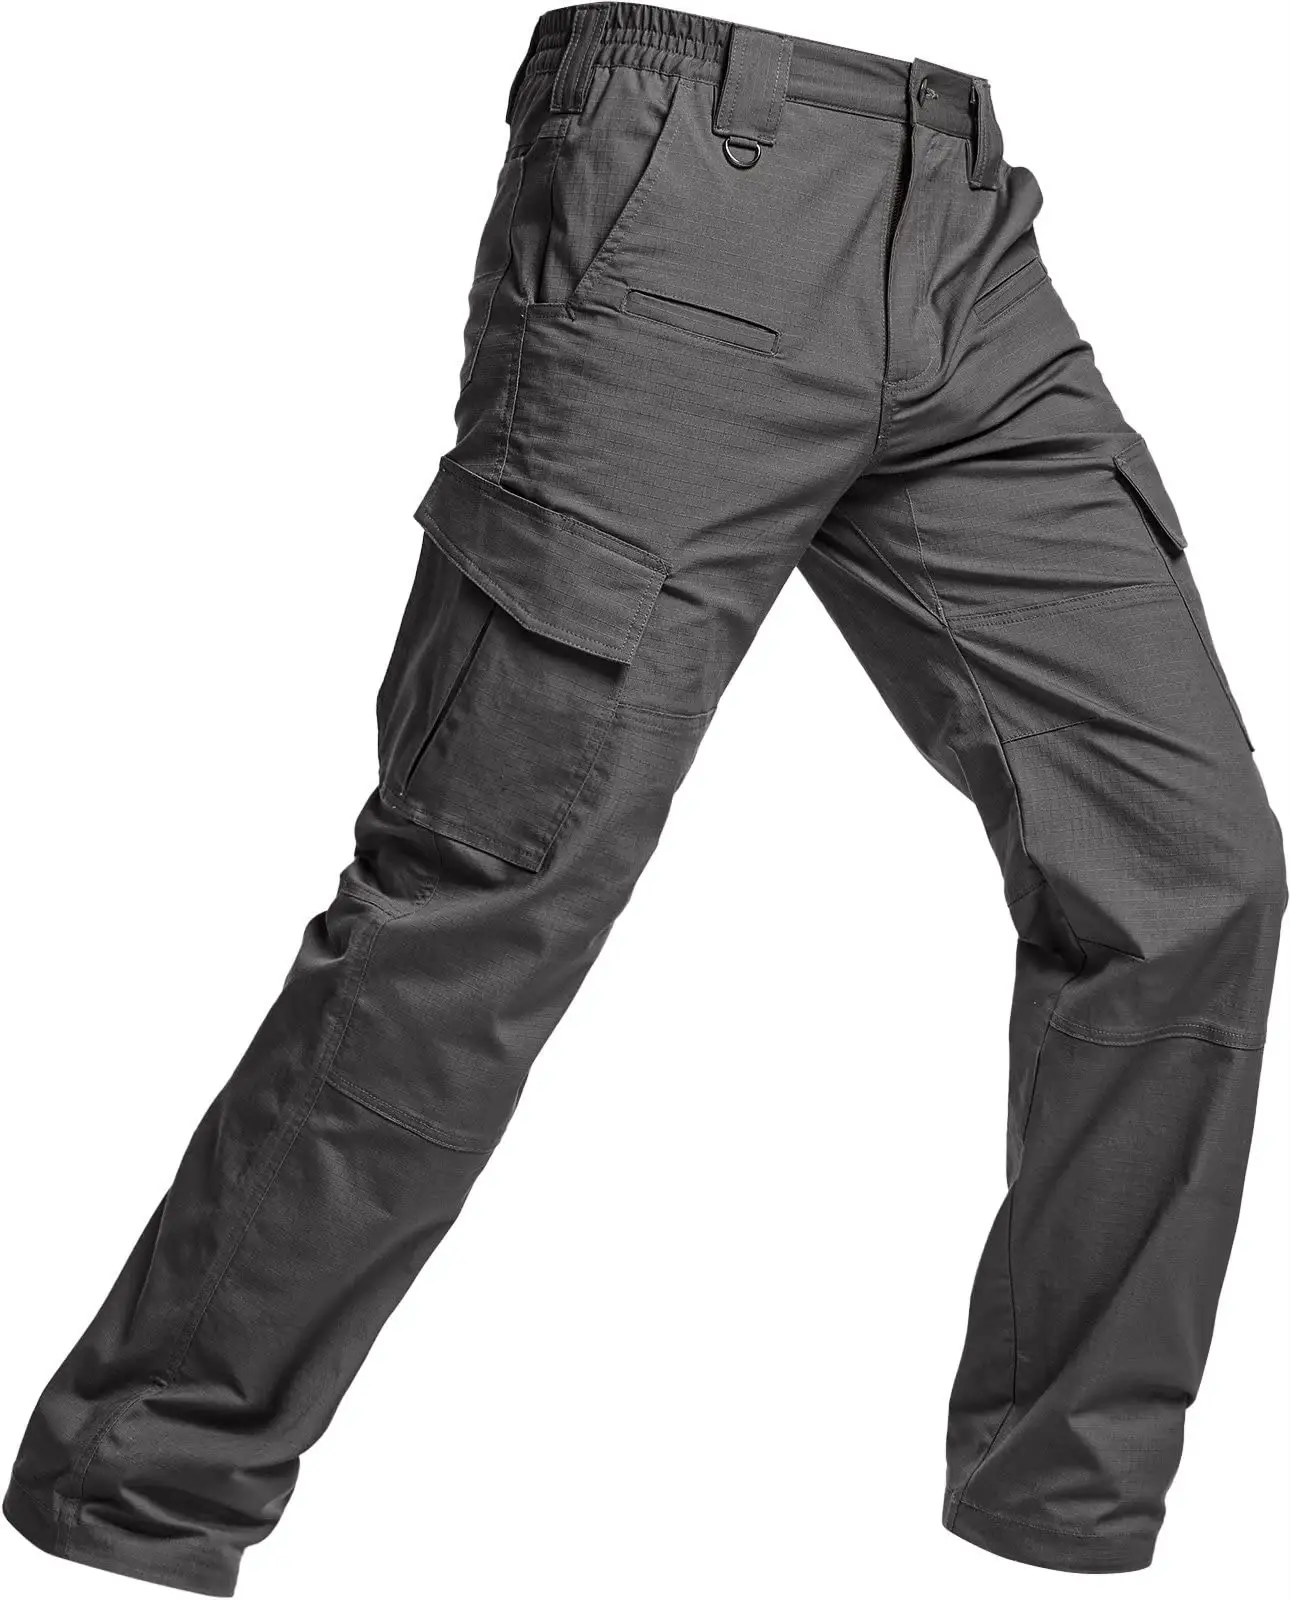 Yeni özel taktik pantolon, su geçirmez elastik tulum, hafif EDC yürüyüş iş pantolon